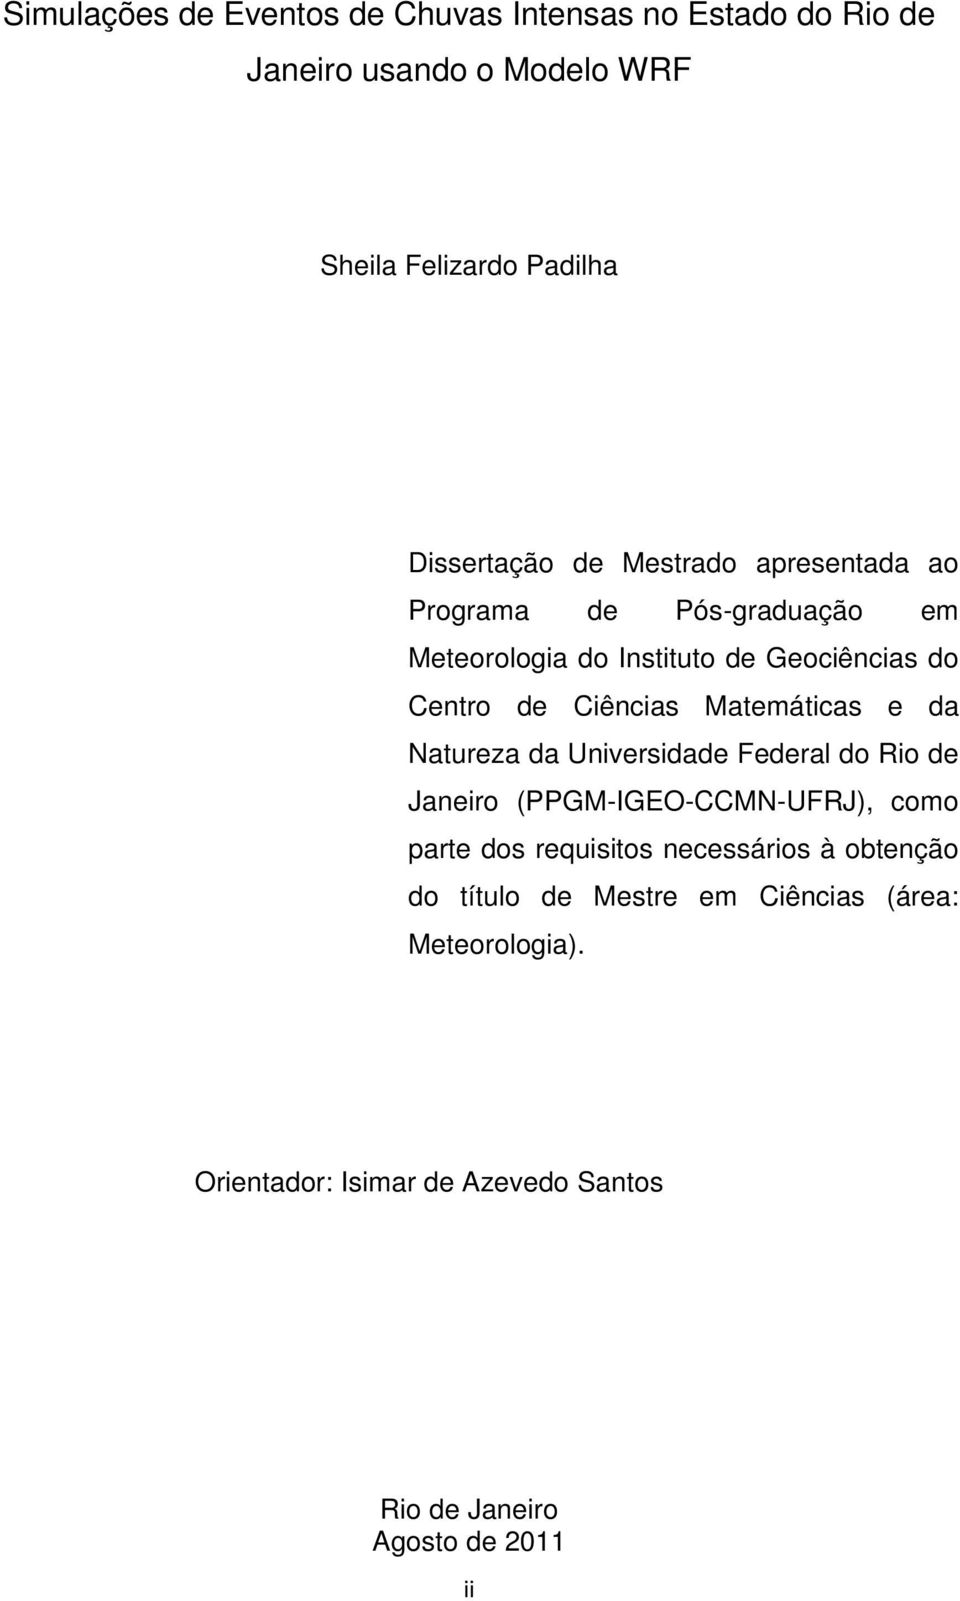 Matemáticas e da Natureza da Universidade Federal do Rio de Janeiro (PPGM-IGEO-CCMN-UFRJ), como parte dos requisitos